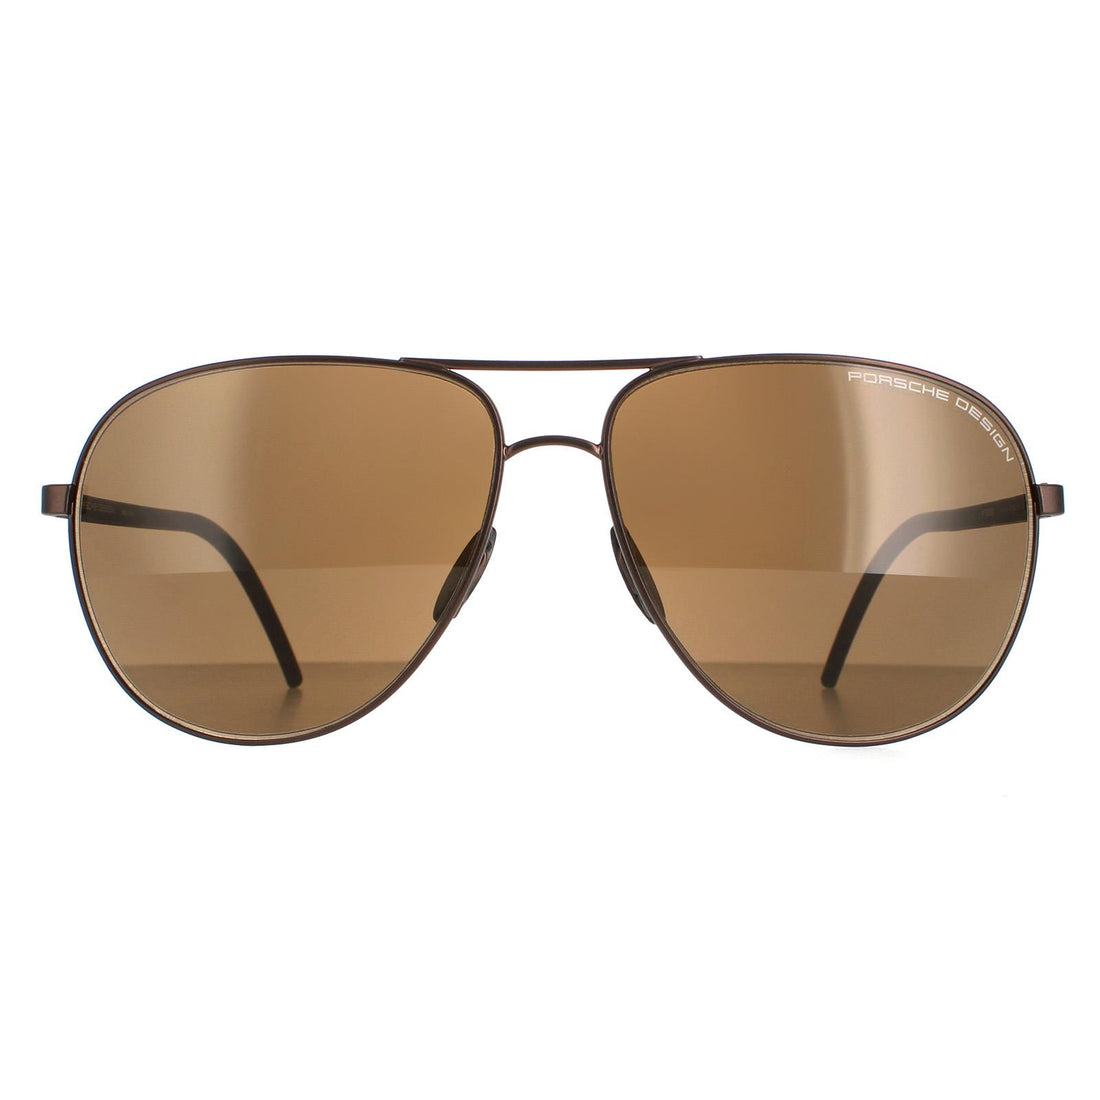 Porsche Design P8651 Sunglasses Brown / Brown Polarized